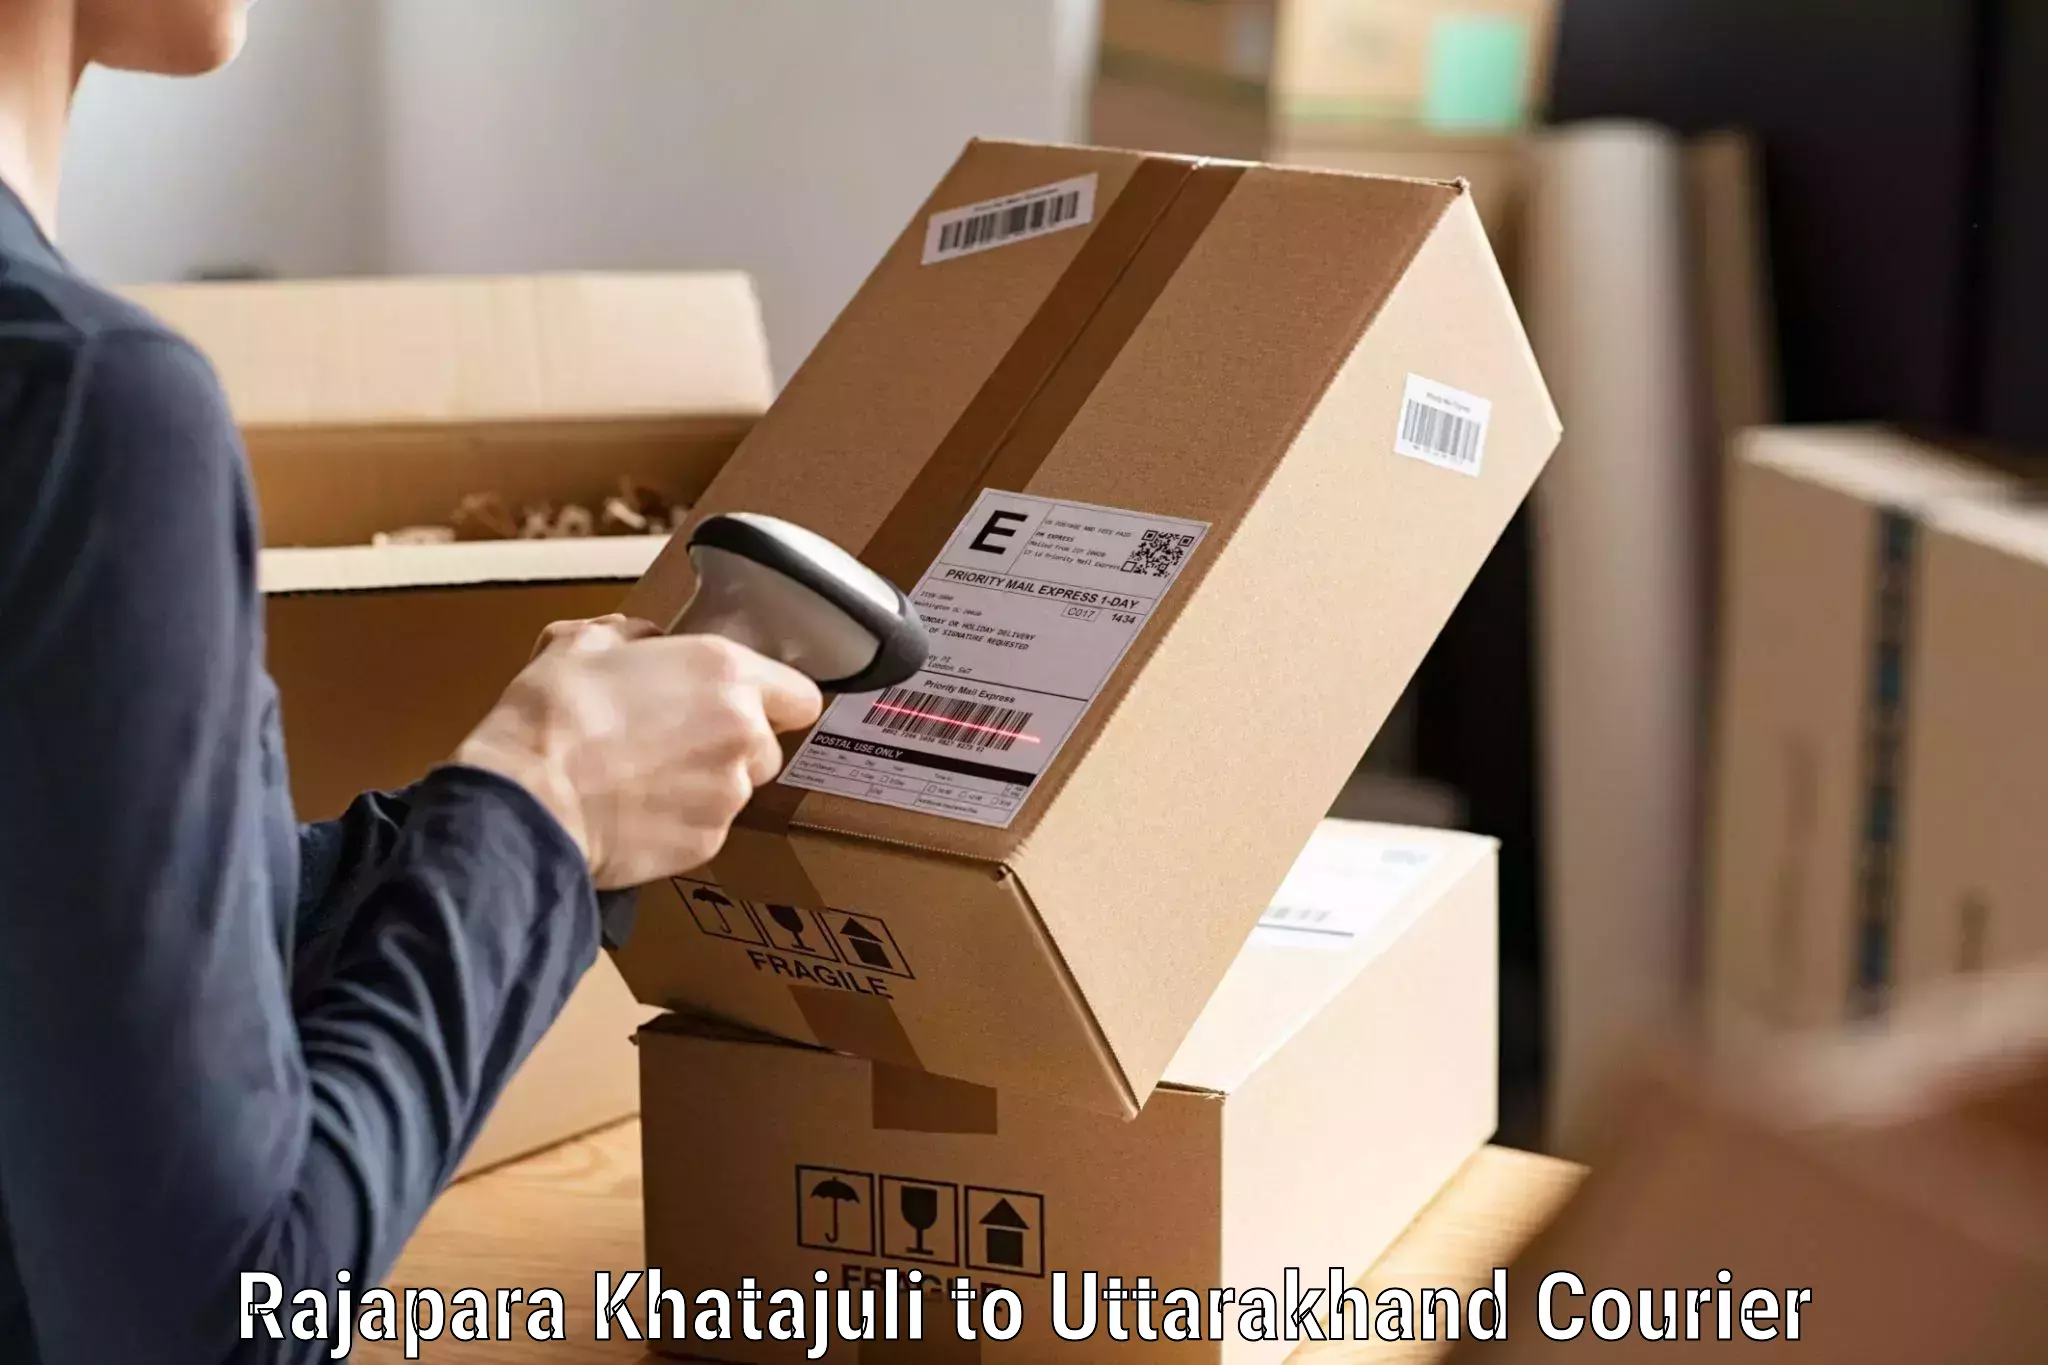 Reliable parcel services Rajapara Khatajuli to Rishikesh